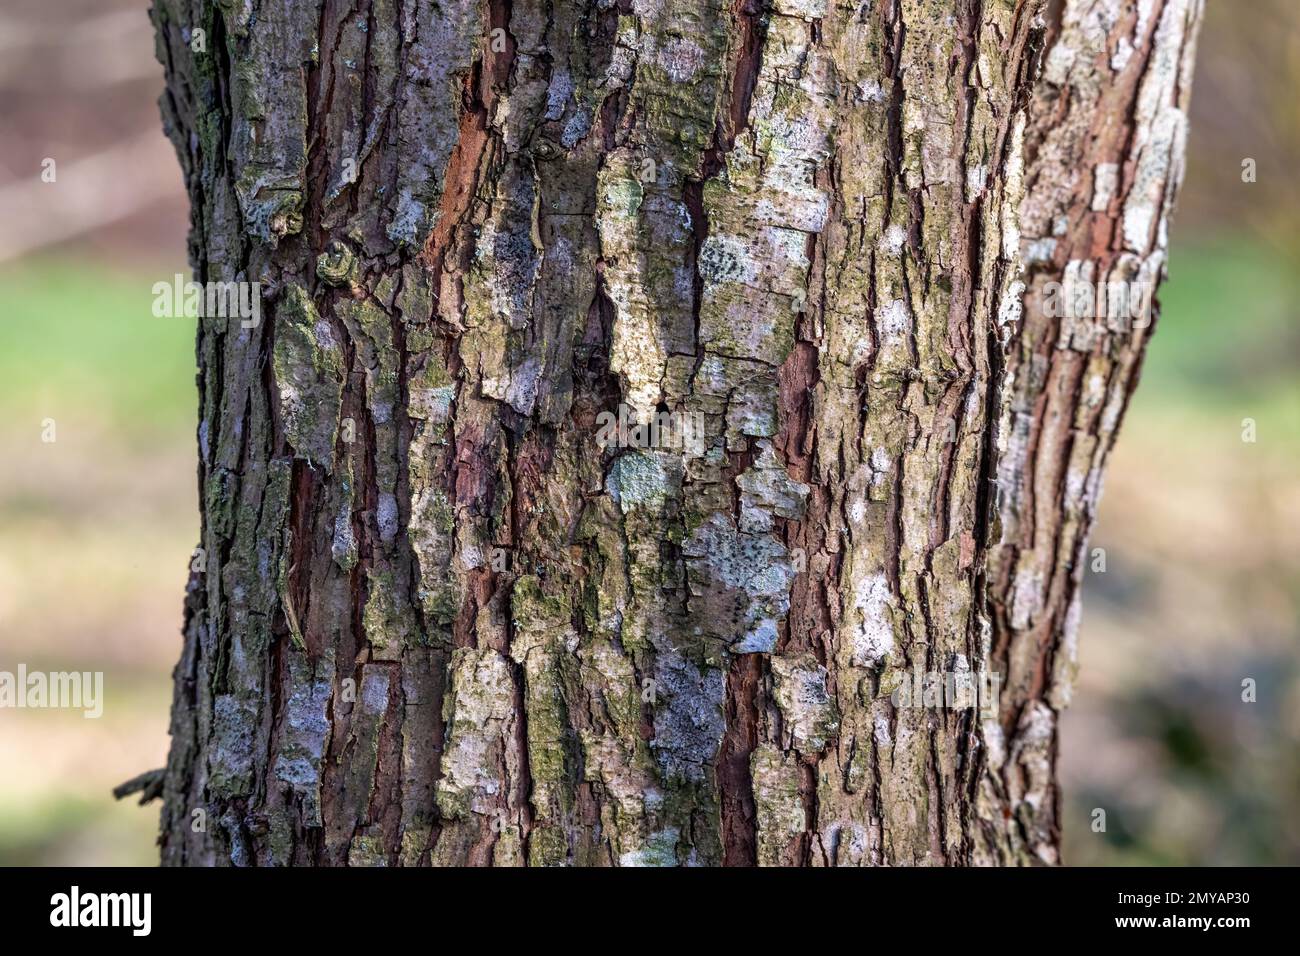 Corteccia profondamente spaccata sul tronco dell'albero, con muffe e licheni. Foto Stock